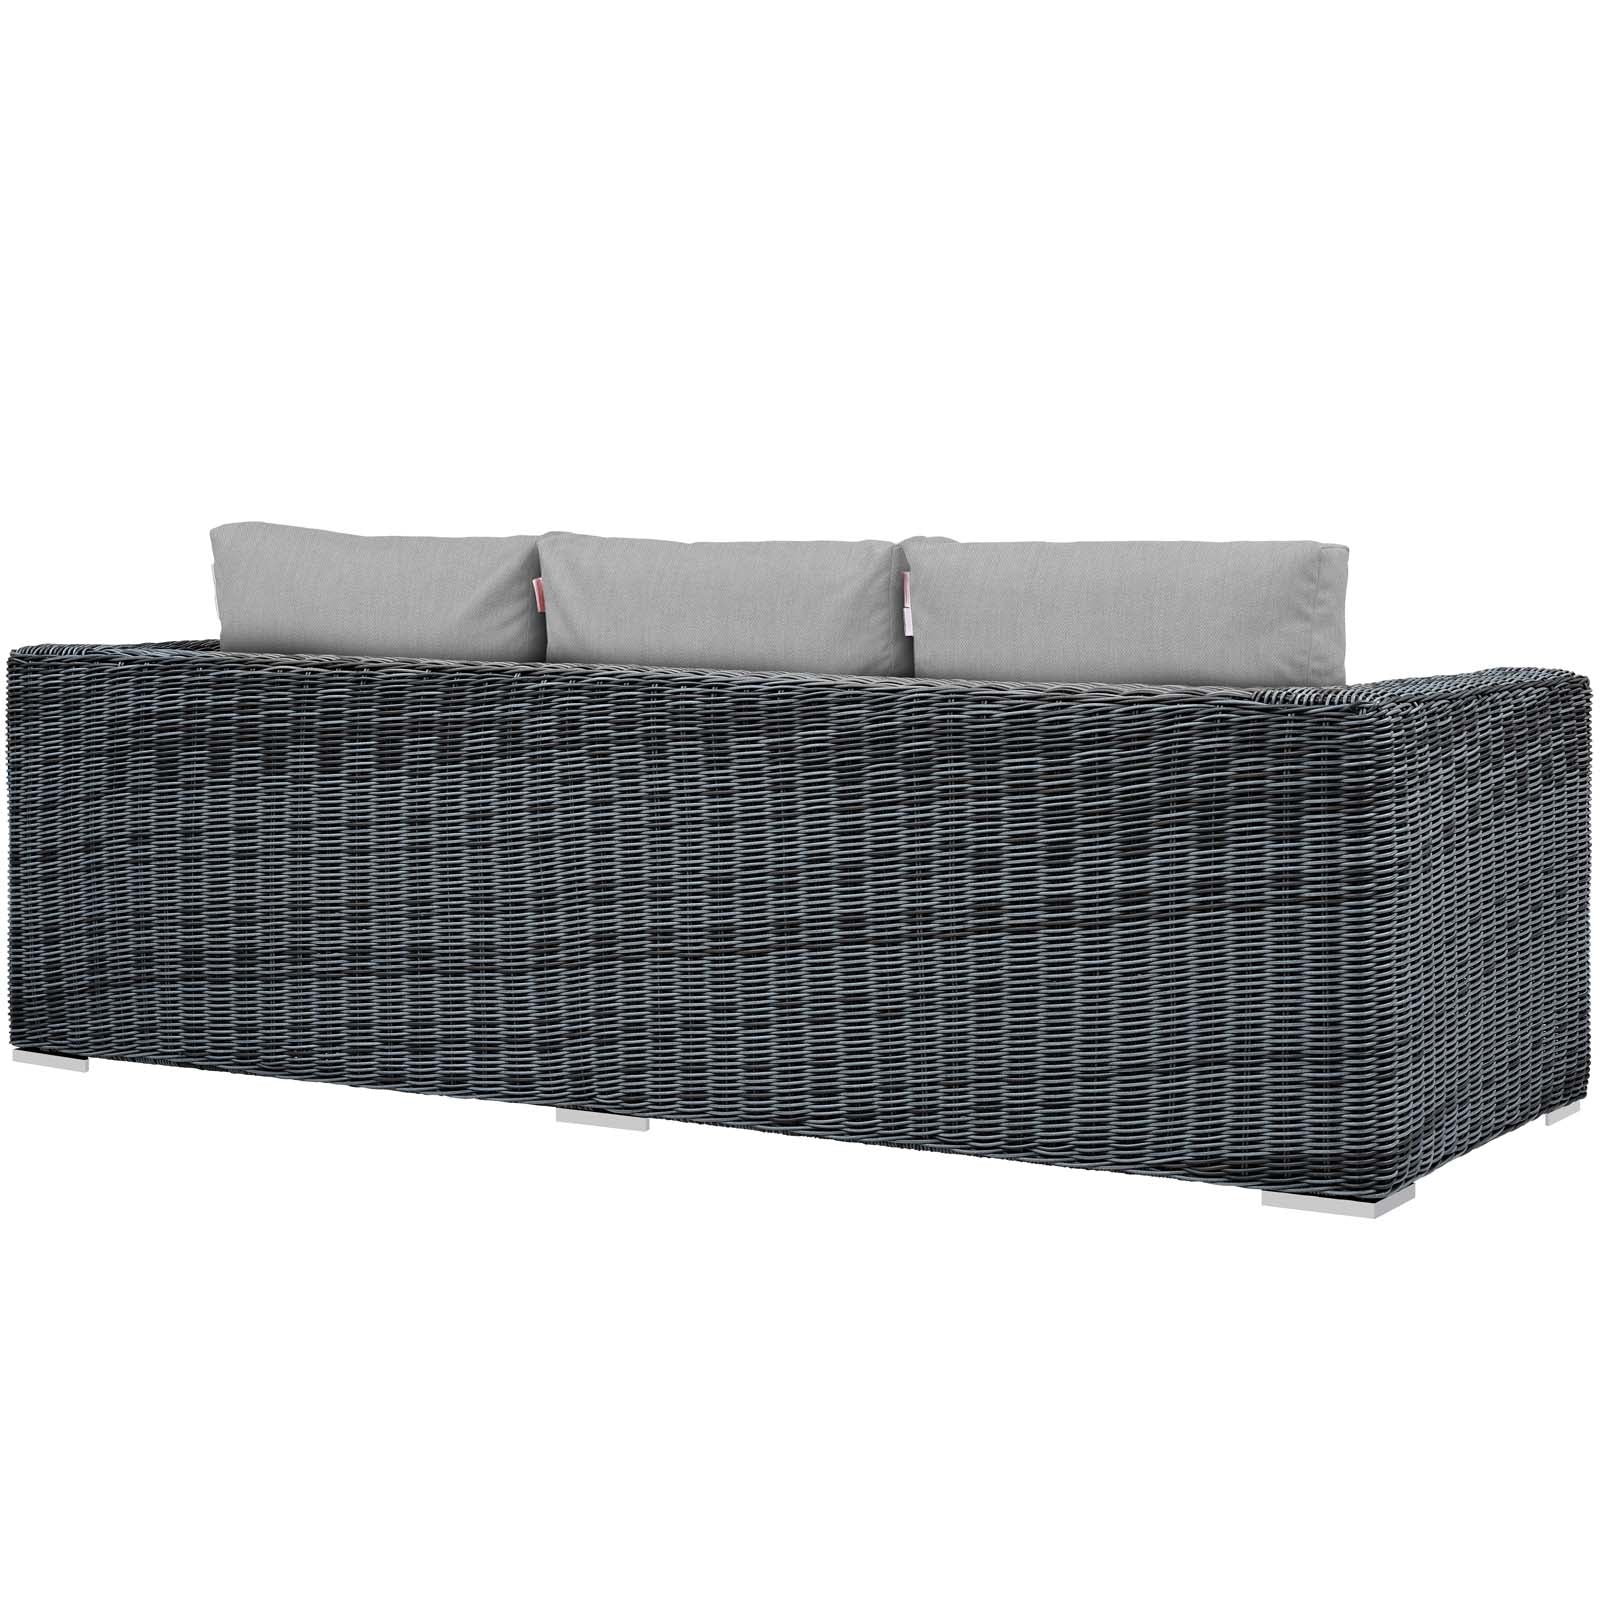 Modway Outdoor Sofas - Summon Outdoor Patio Sunbrella Sofa Canvas Gray